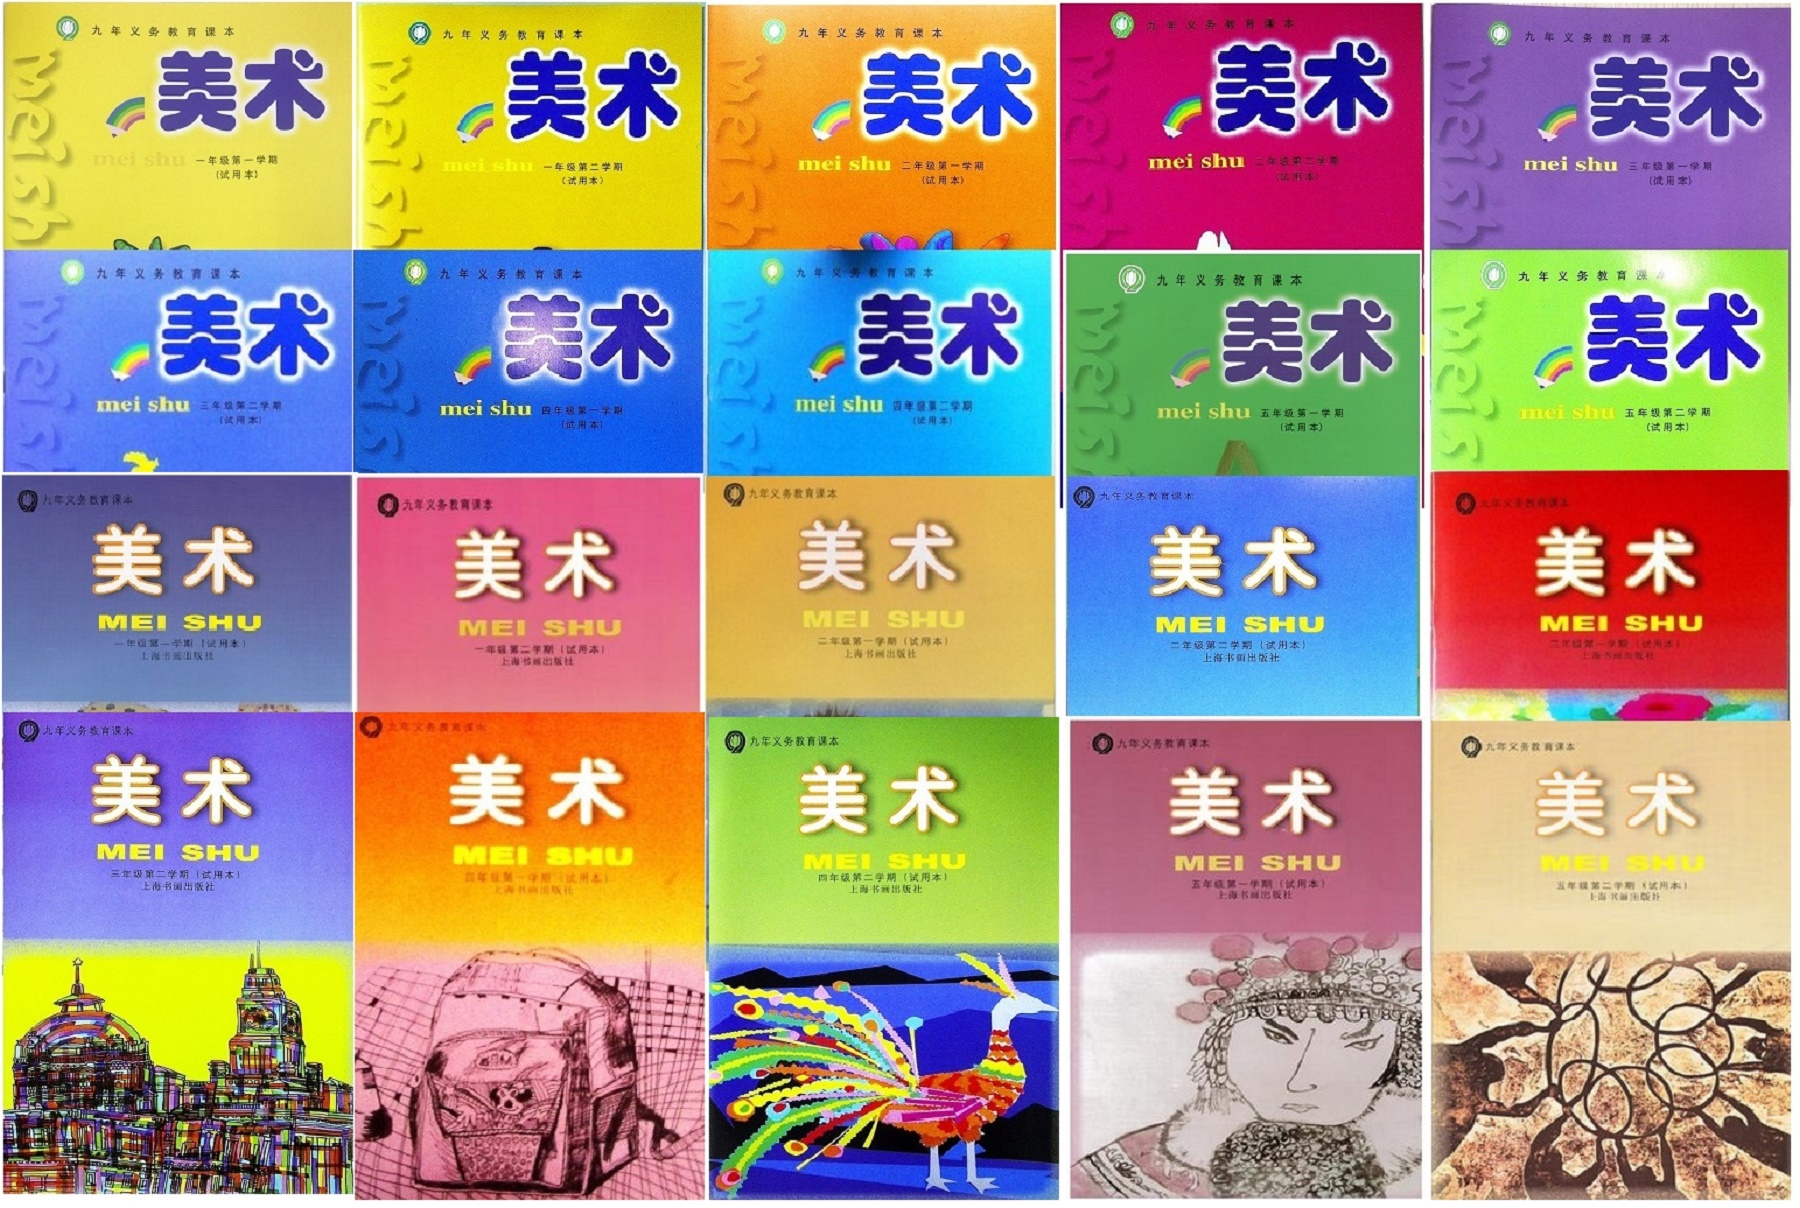 【可单选】上海小学美术一二三四五六年级上下册上海教育版上海书画版课本123456年级第一二学期教材教科书材料